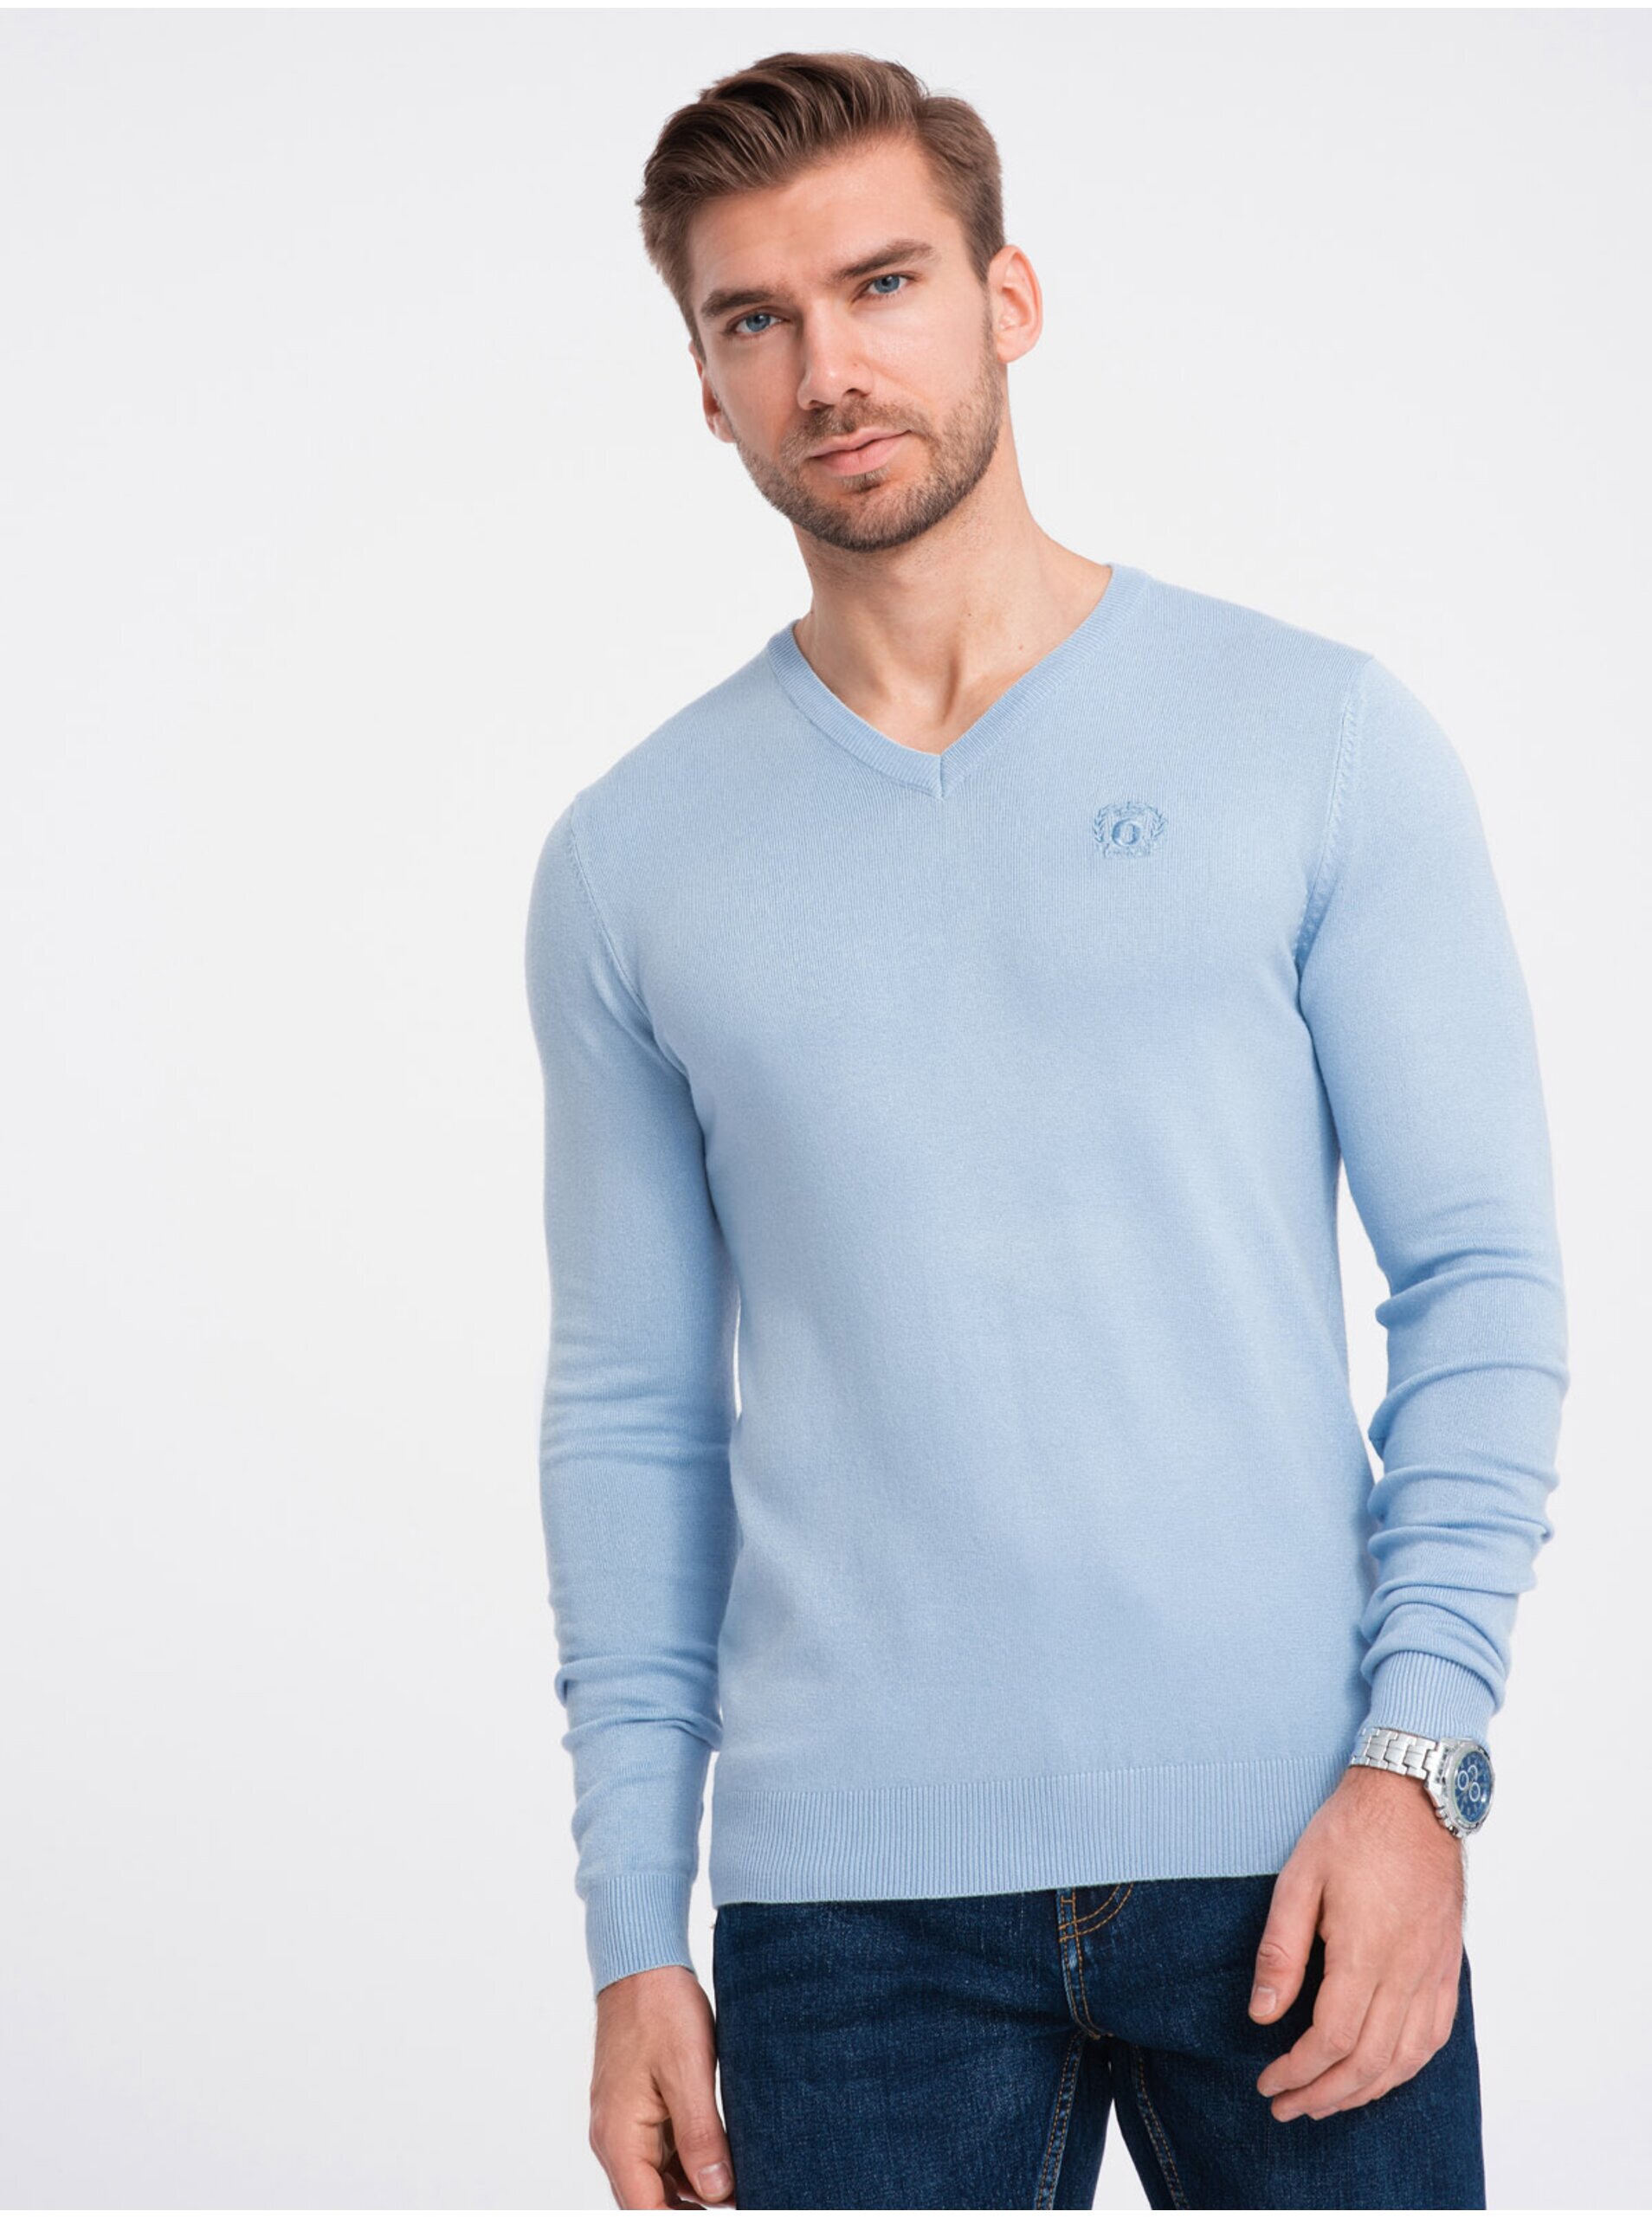 Lacno Svetlo modrý pánsky sveter Ombre Clothing